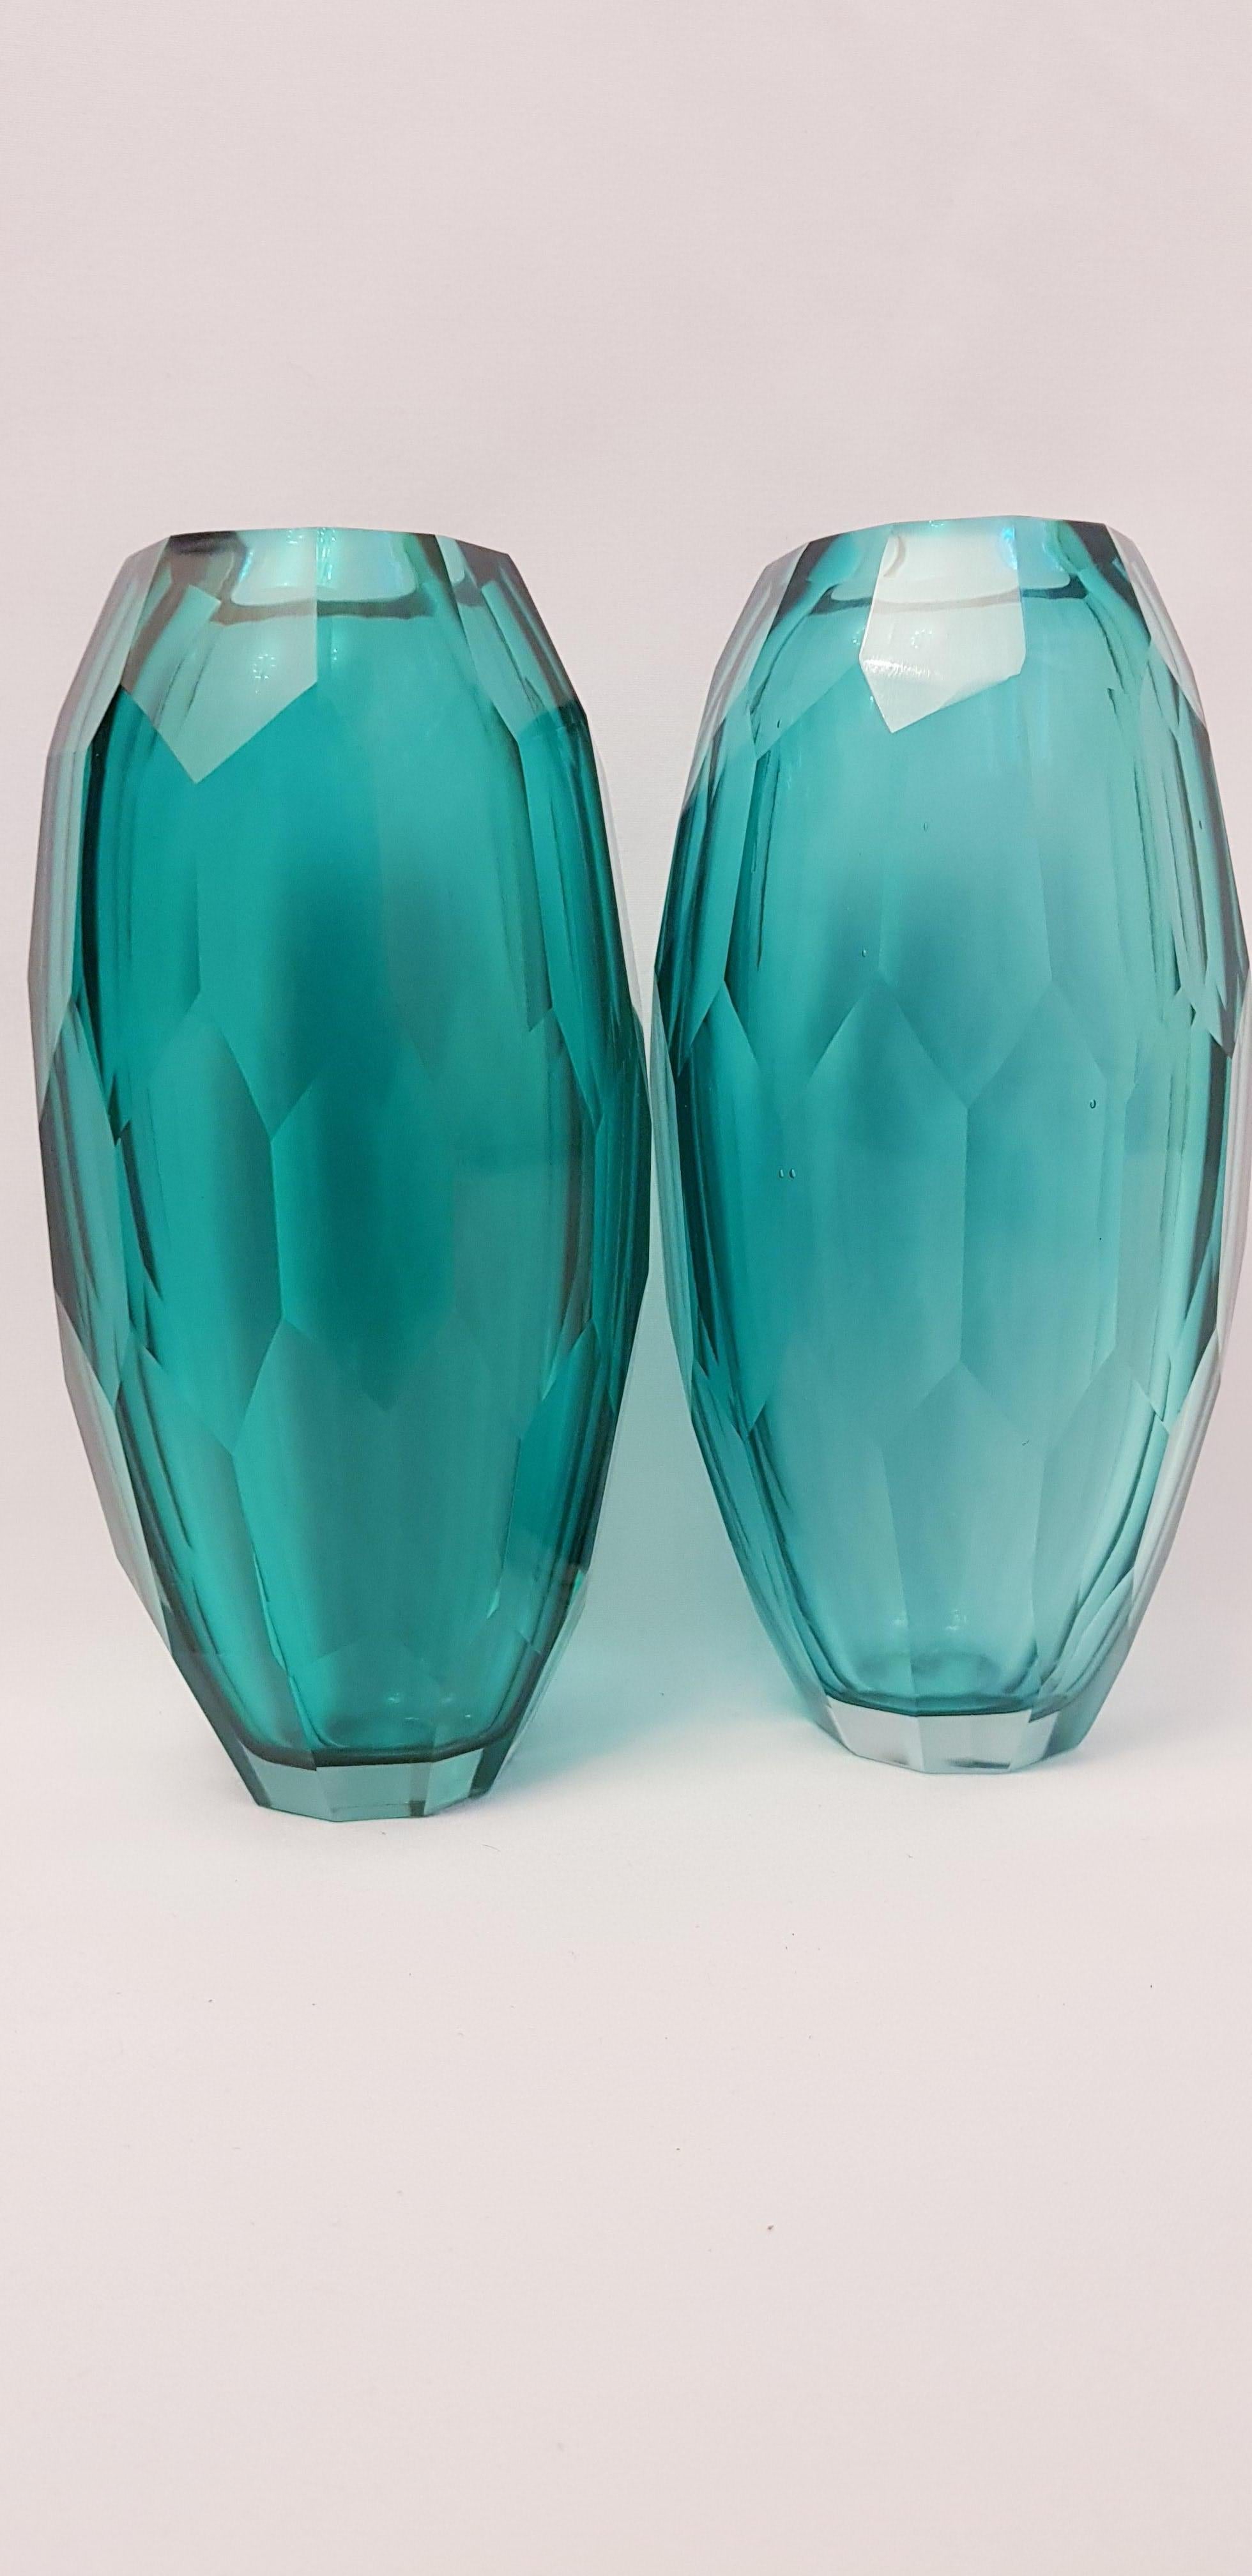 Beautiful vitange murano glass set of two battuto vases, emerald green, one have signature Alberto Dona, brilliant condition.